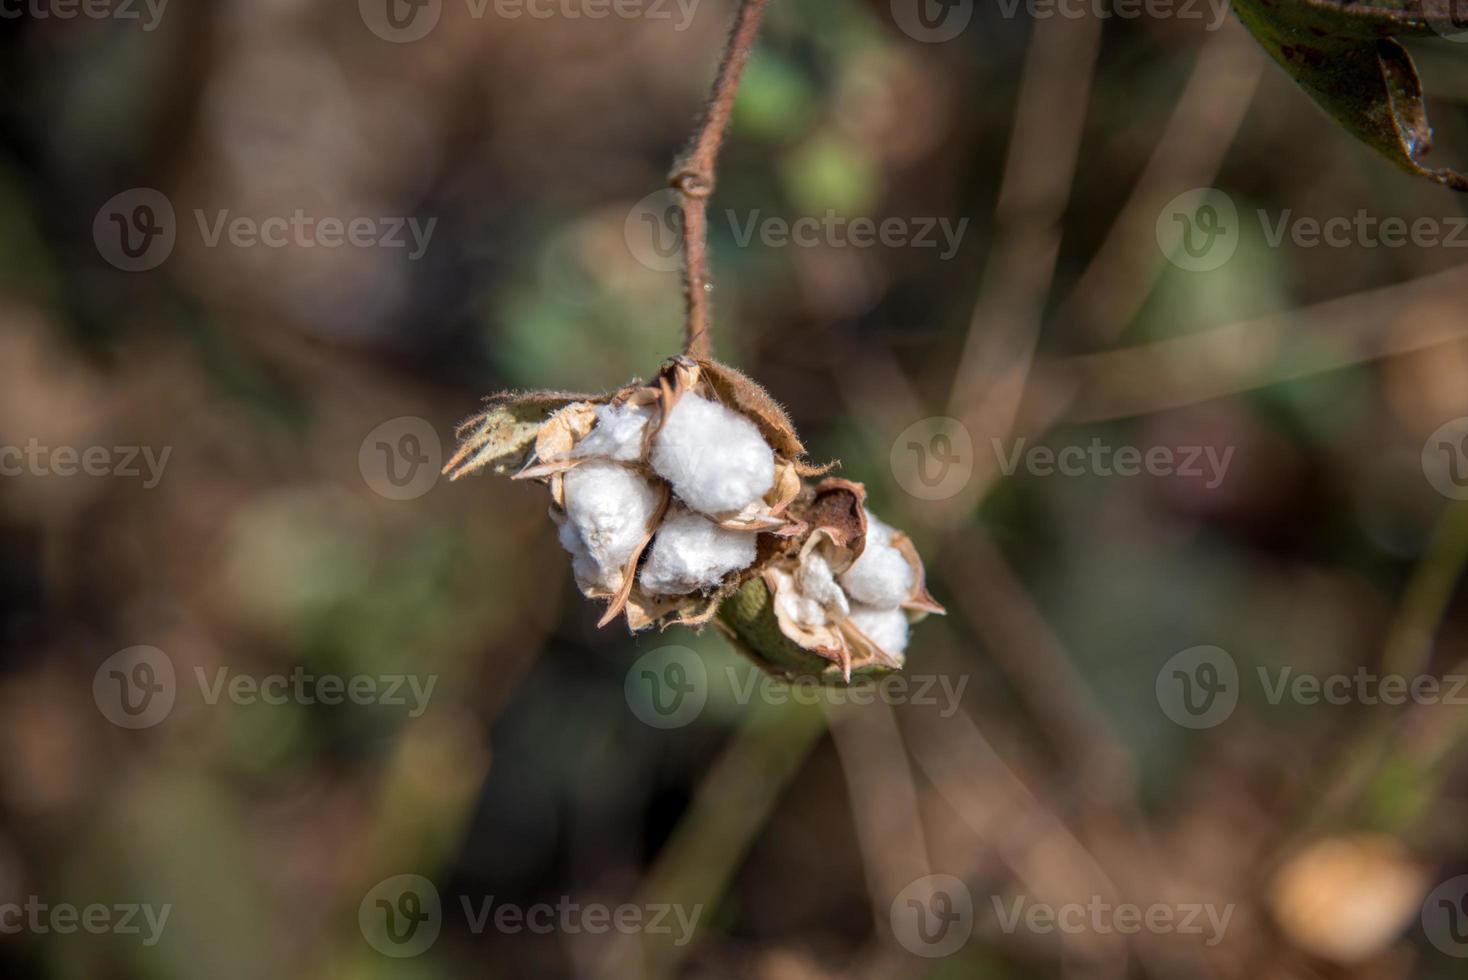 campo de cultivo de algodón, cerca de bolas de algodón y flores. foto